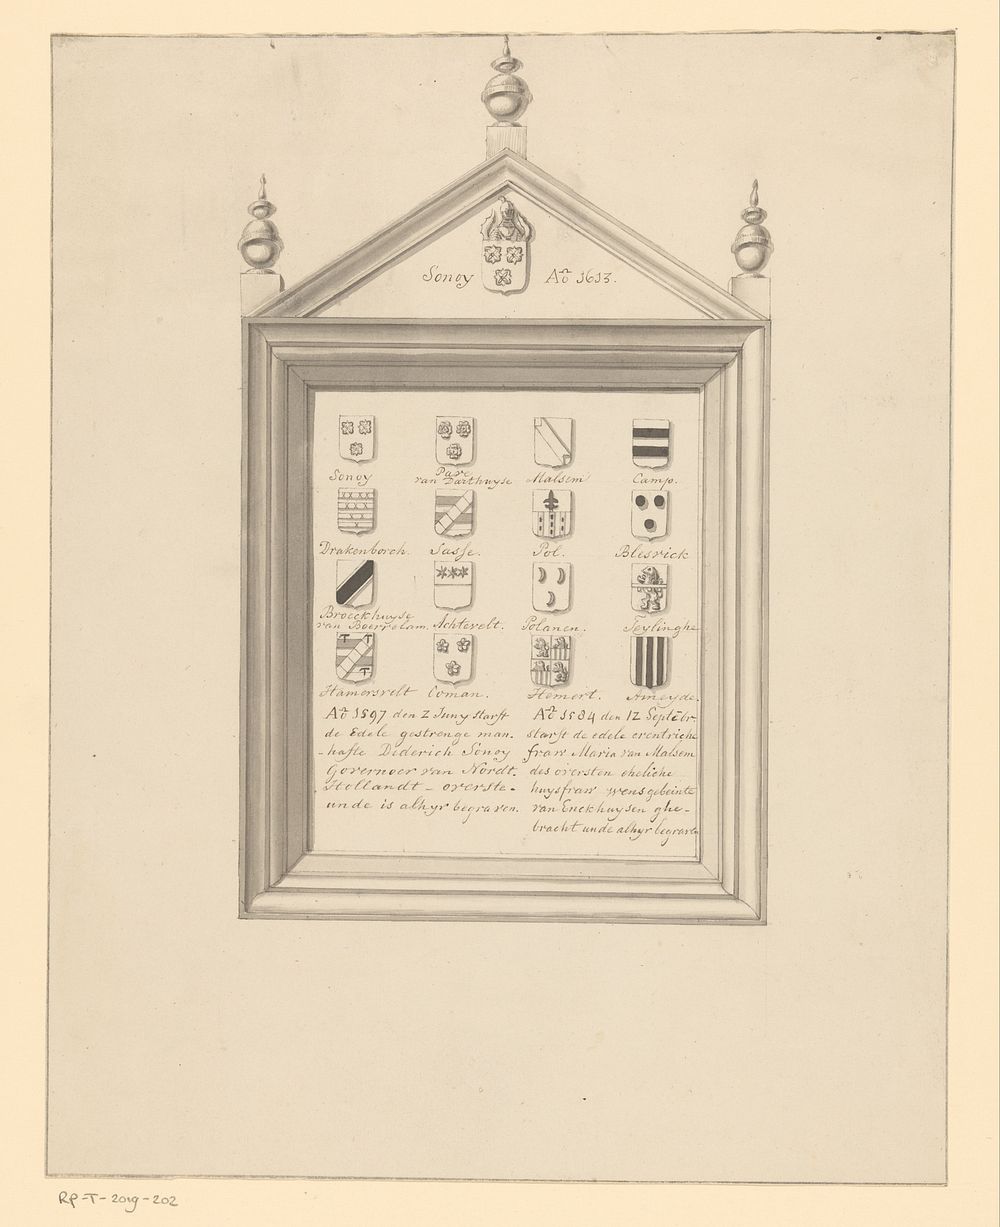 Rouwbord van Sonoy in de kerk te Pieterburen (1700 - 1800) by anonymous